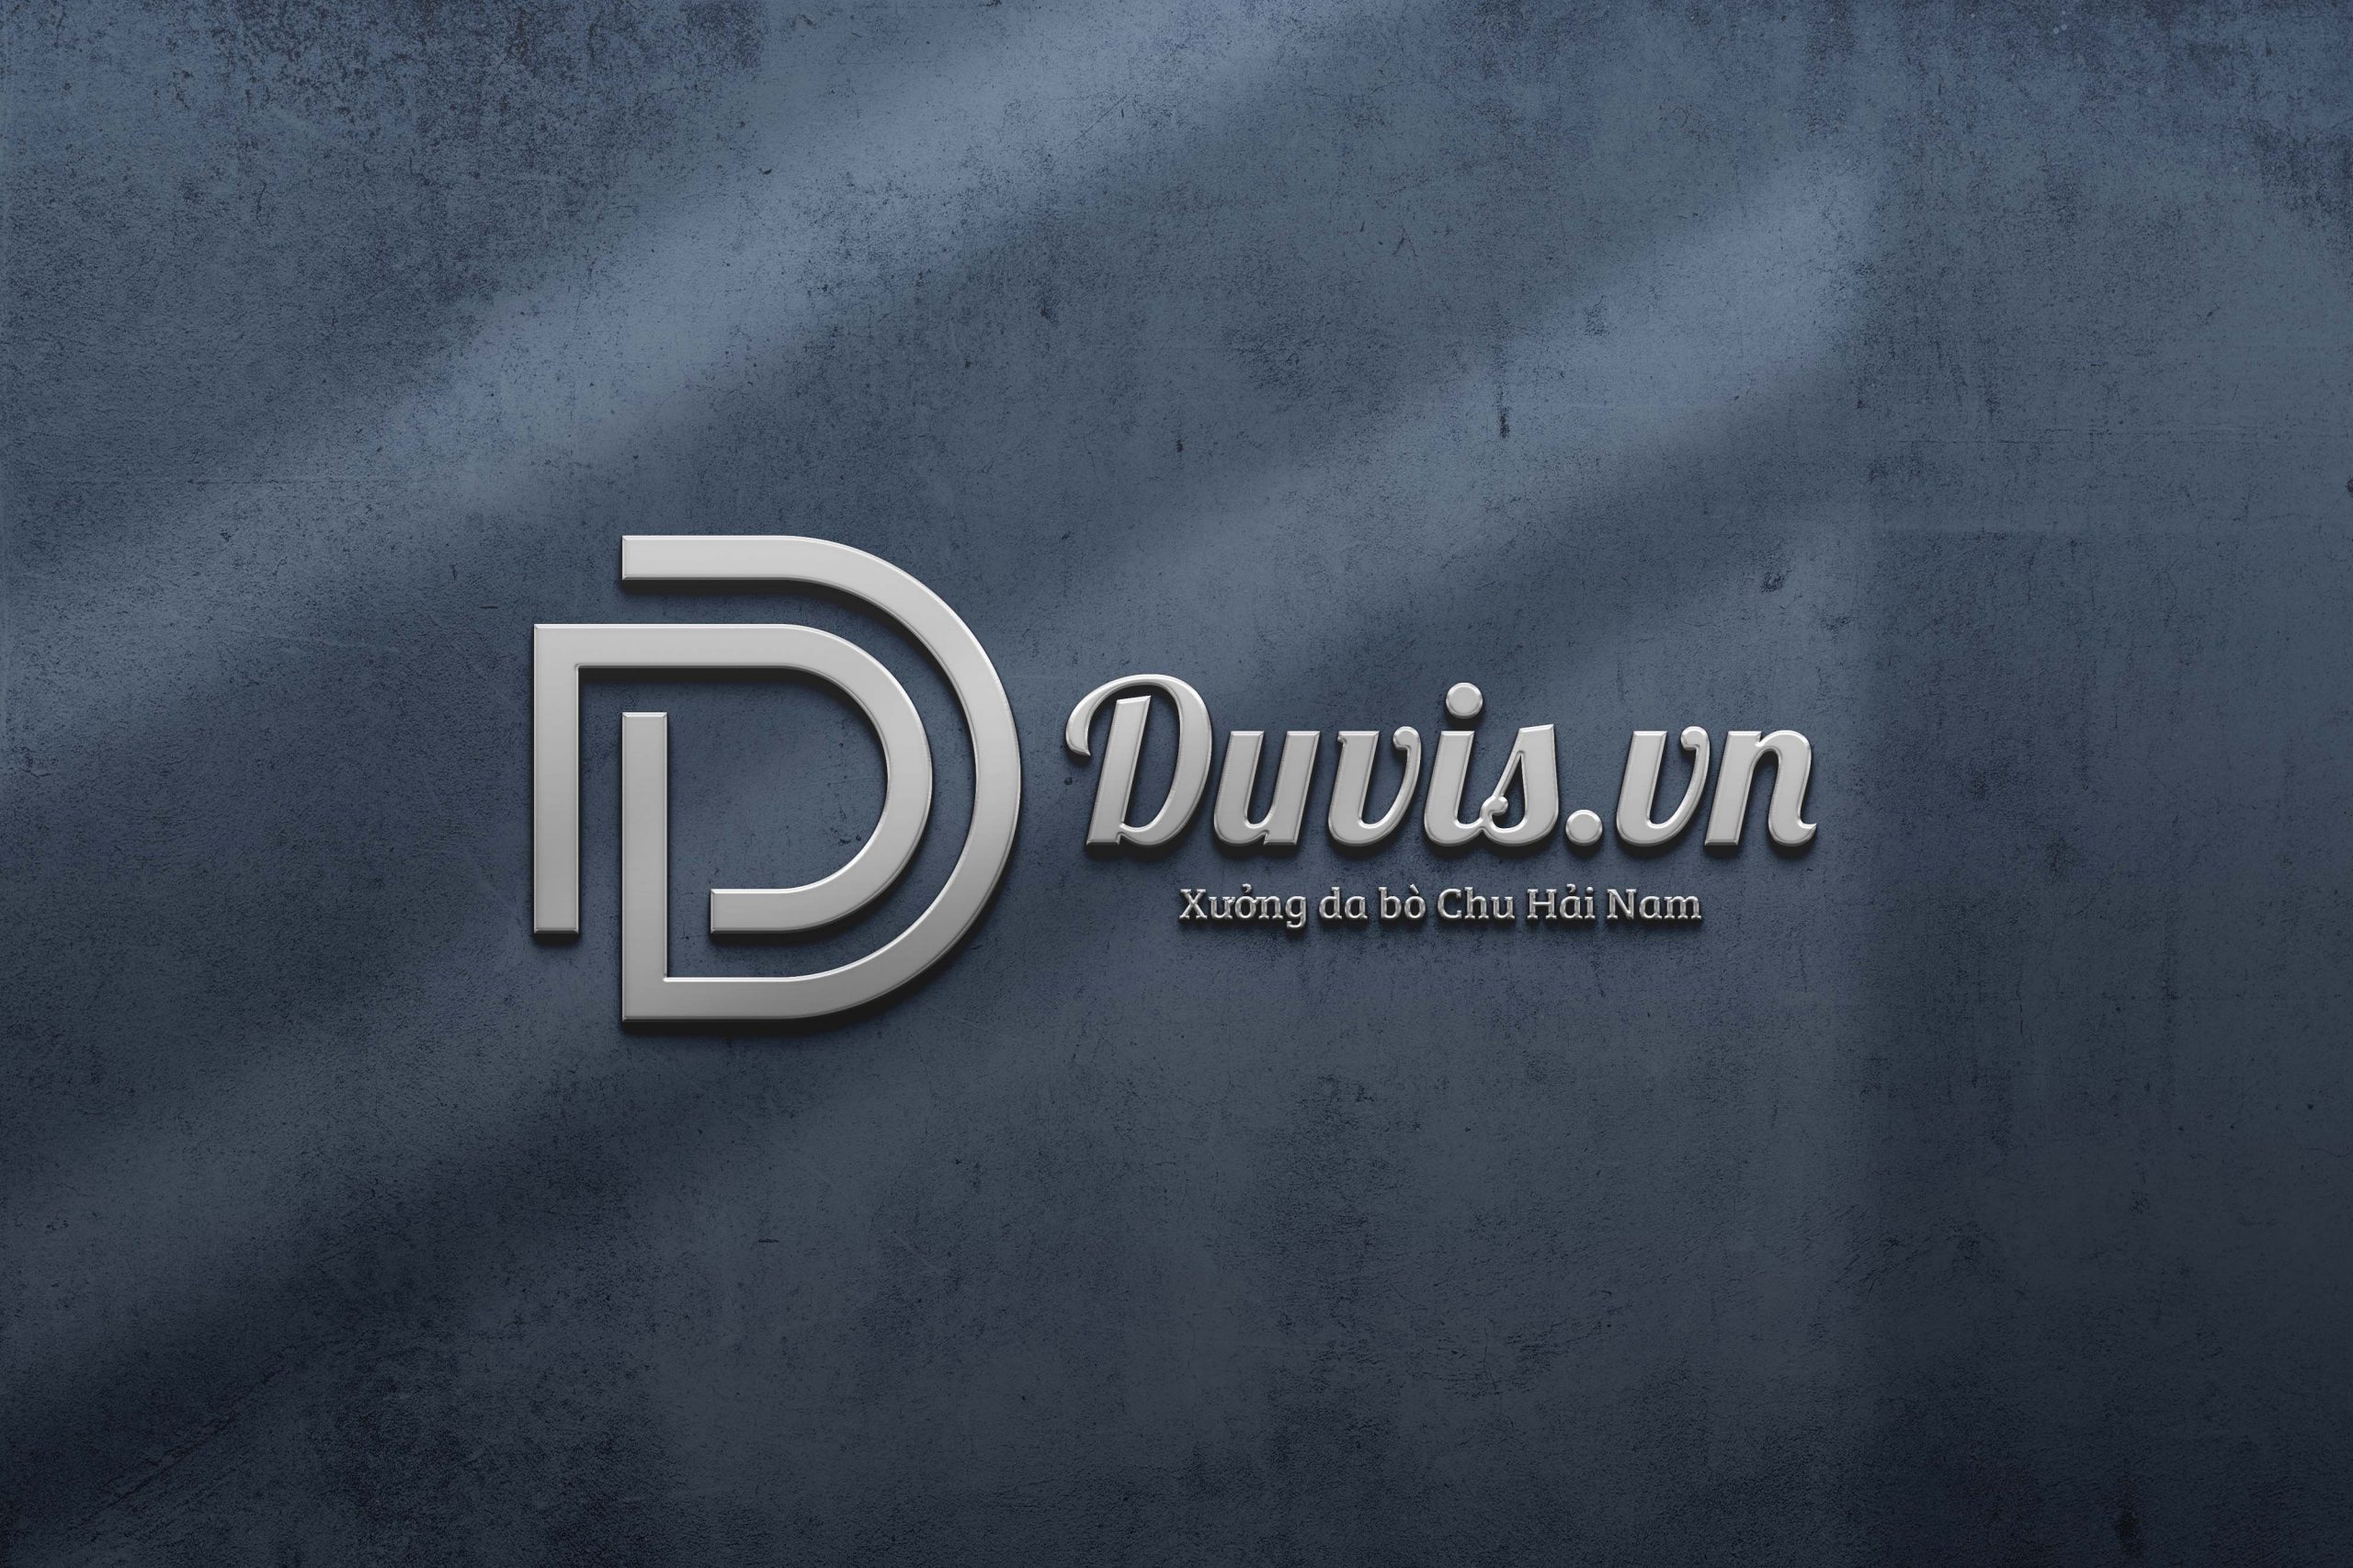 Duvis là tên thương hiệu độc quyền phân phối giầy domain authority và phụ khiếu nại domain authority trườn kể từ xưởng domain authority trườn Chu Hải Nam